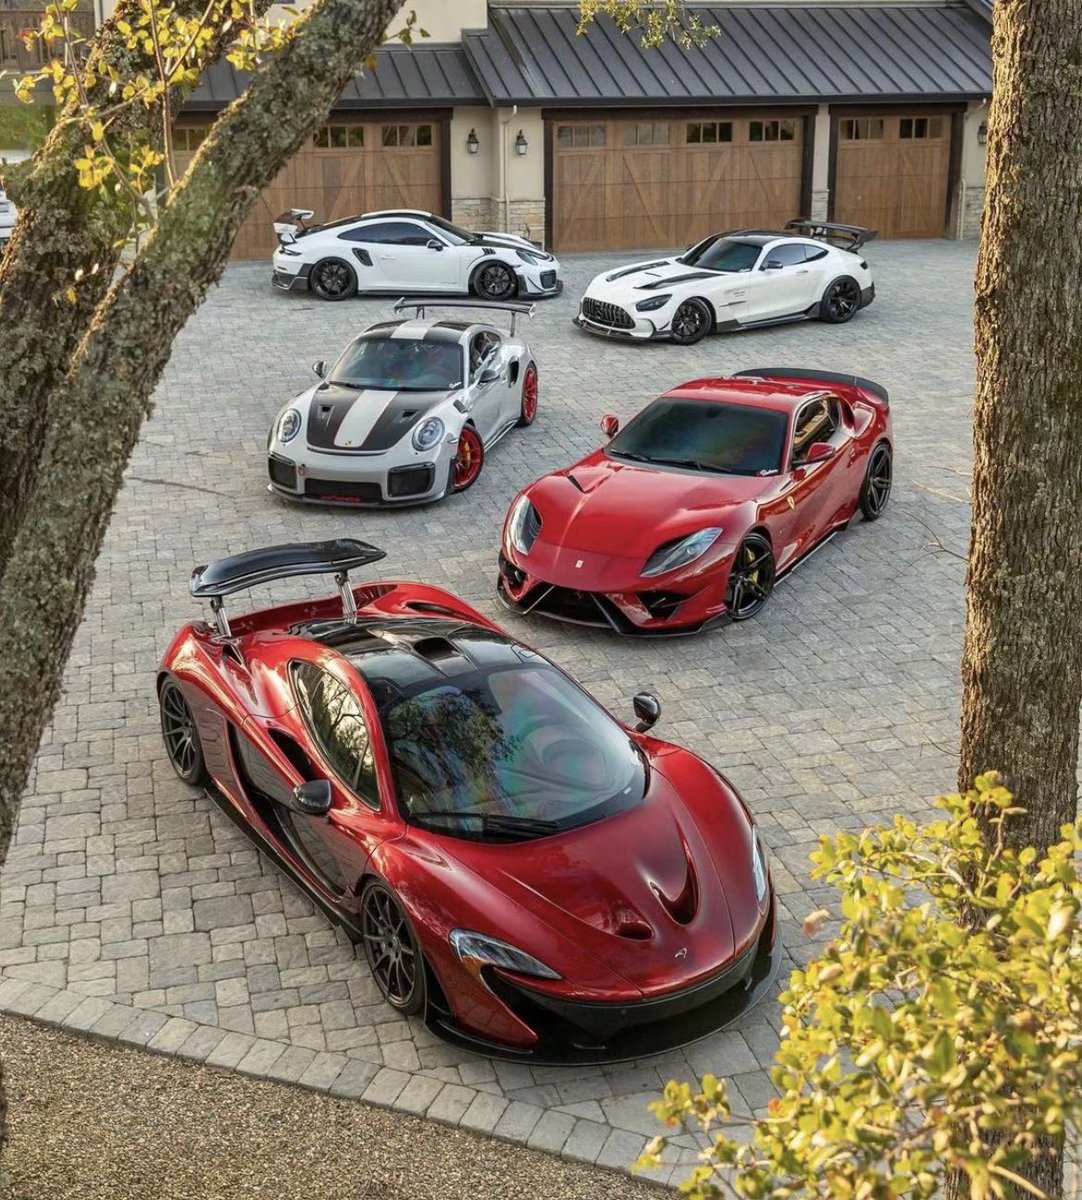 McLaren, Ferrari, Porsche or Mercedes ?